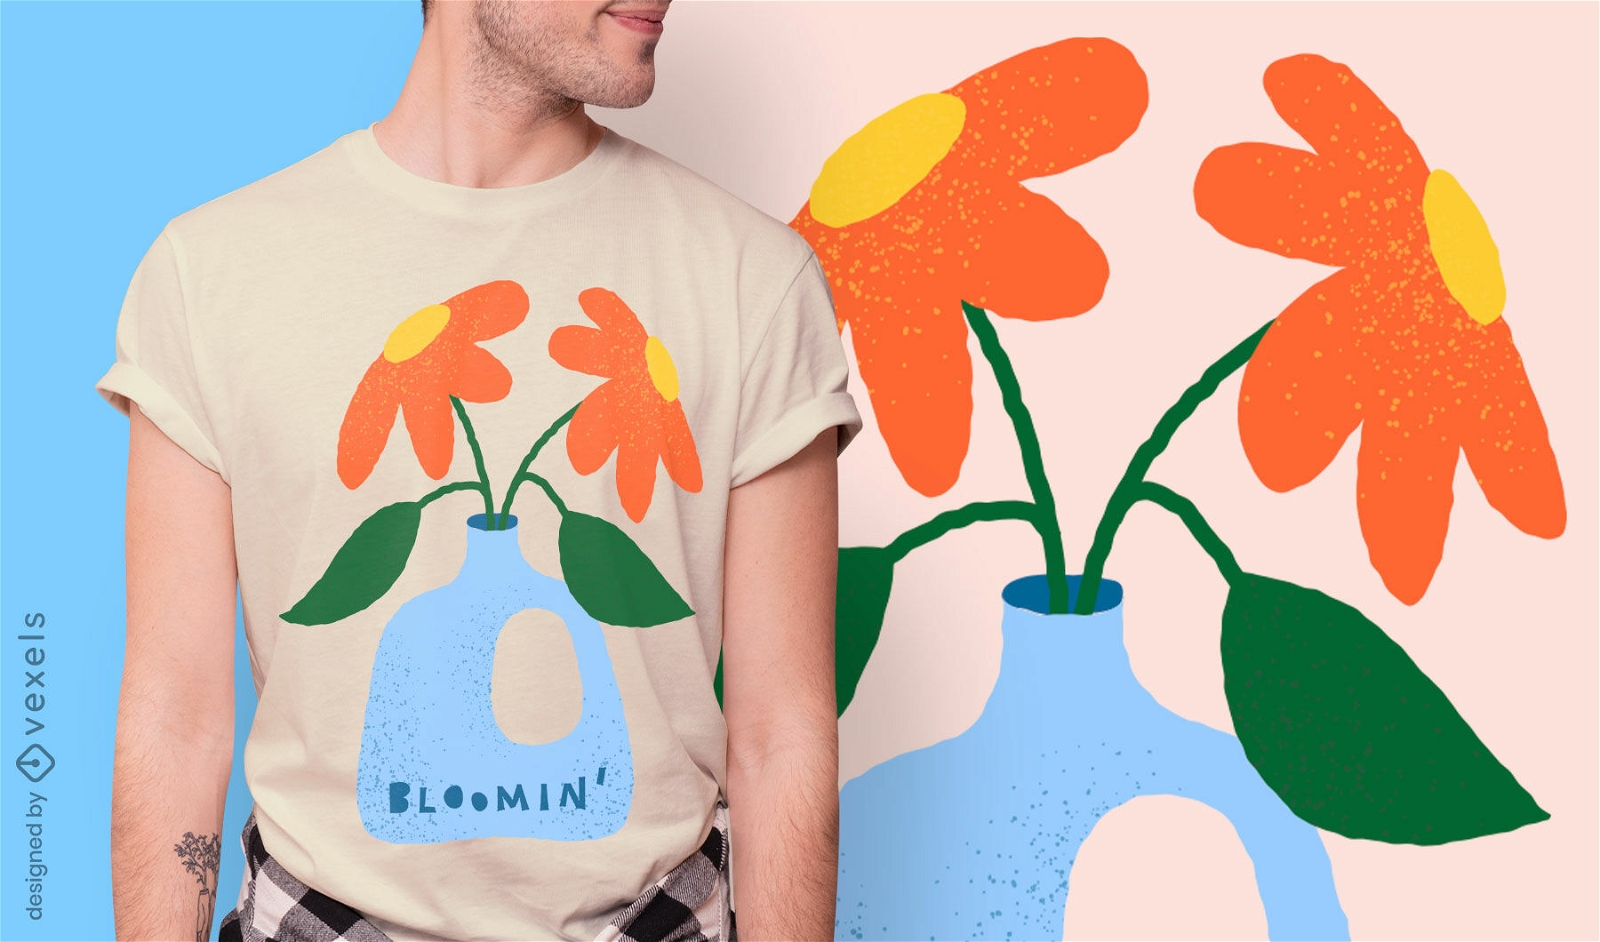 Lovely bloomin' flowers t-shirt design